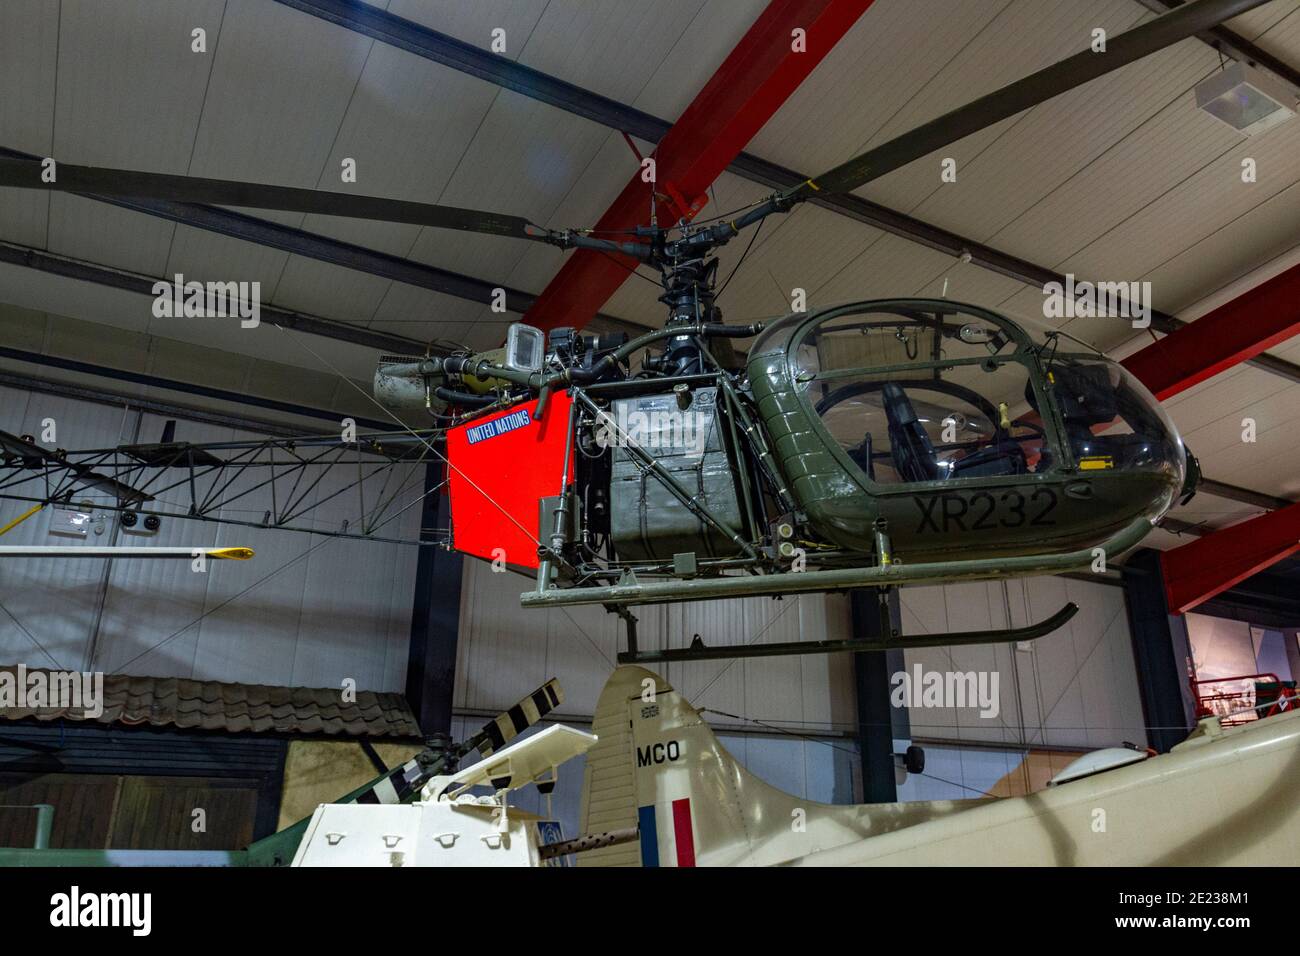 Un hélicoptère français Alouette AH Mk.2 est exposé au Army Flying Museum, un musée de l'aviation militaire à Stockbridge, Hampshire, Royaume-Uni. Banque D'Images